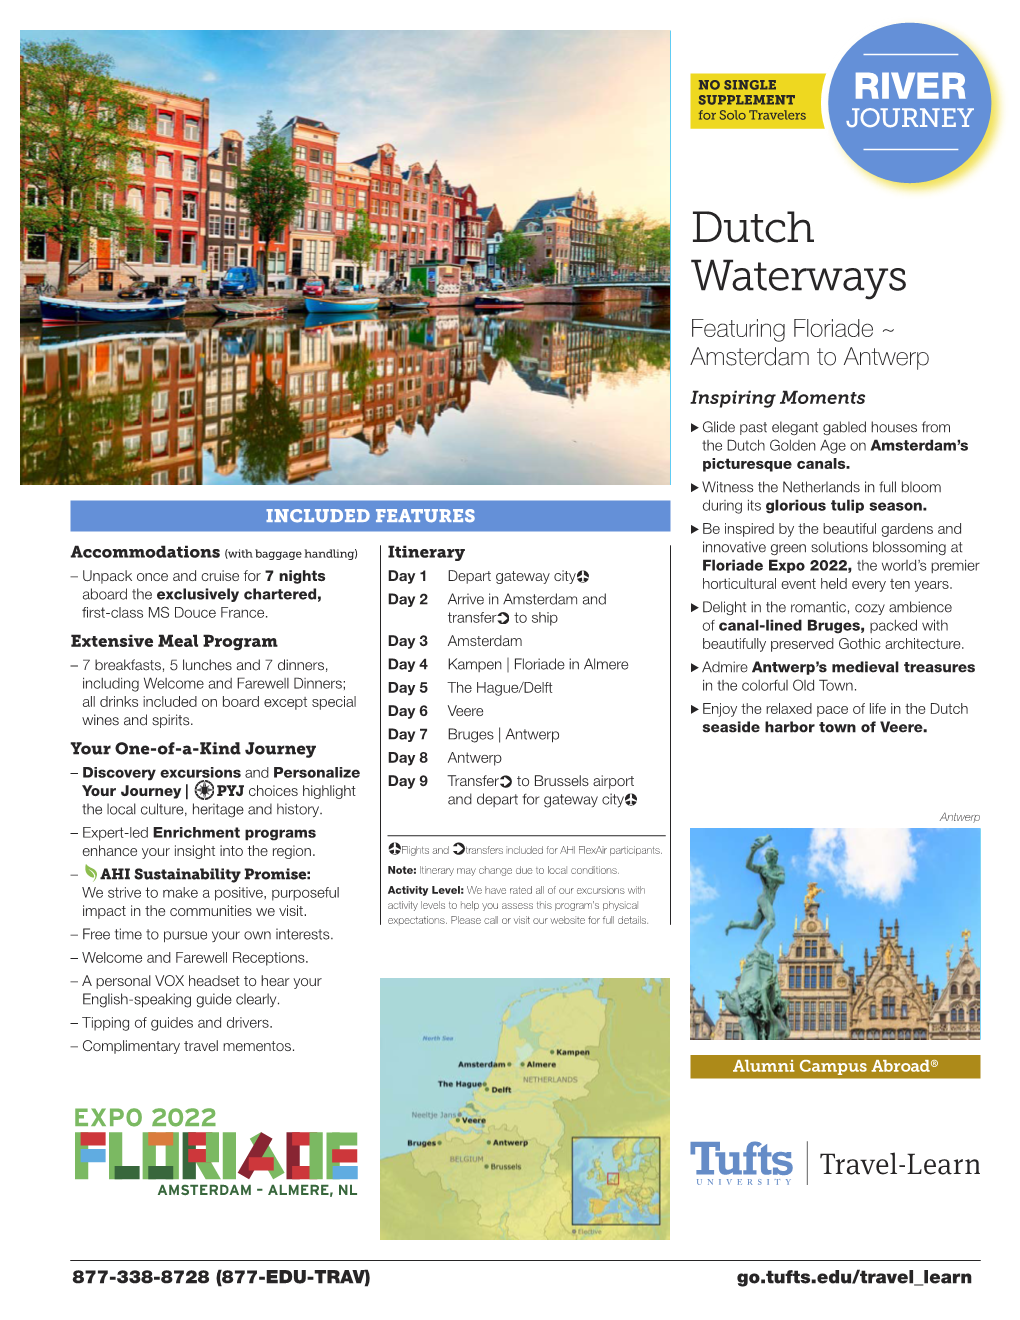 Dutch Waterways Featuring Floriade ~ Amsterdam to Antwerp